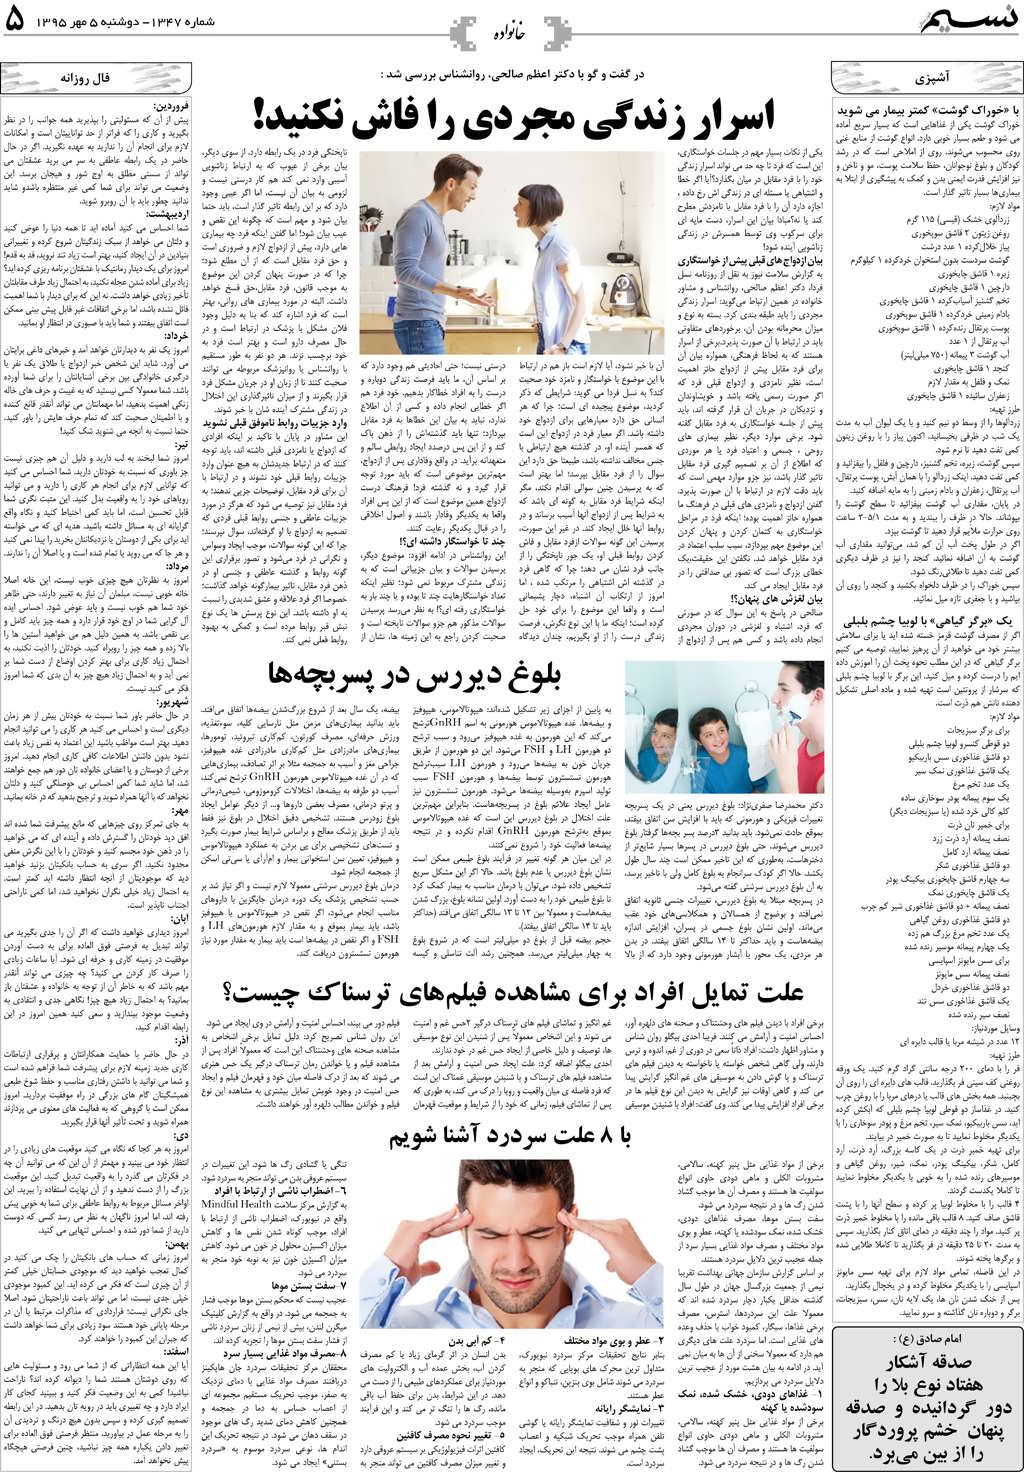 صفحه خانواده روزنامه نسیم شماره 1347